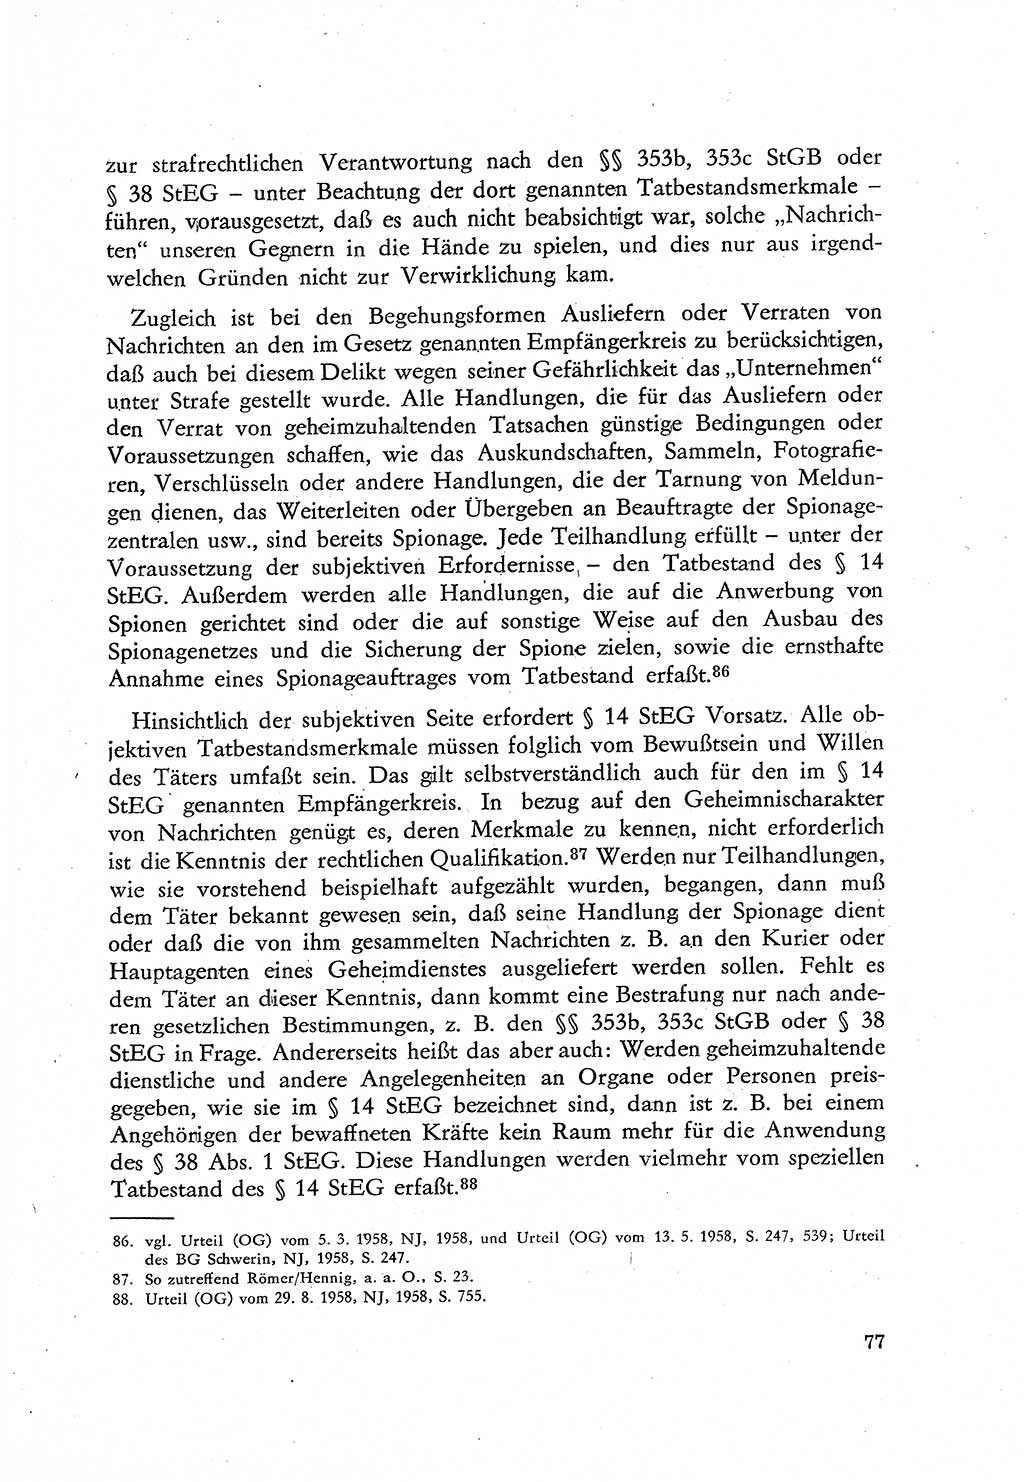 Beiträge zum Strafrecht [Deutsche Demokratische Republik (DDR)], Staatsverbrechen 1959, Seite 77 (Beitr. Strafr. DDR St.-Verbr. 1959, S. 77)